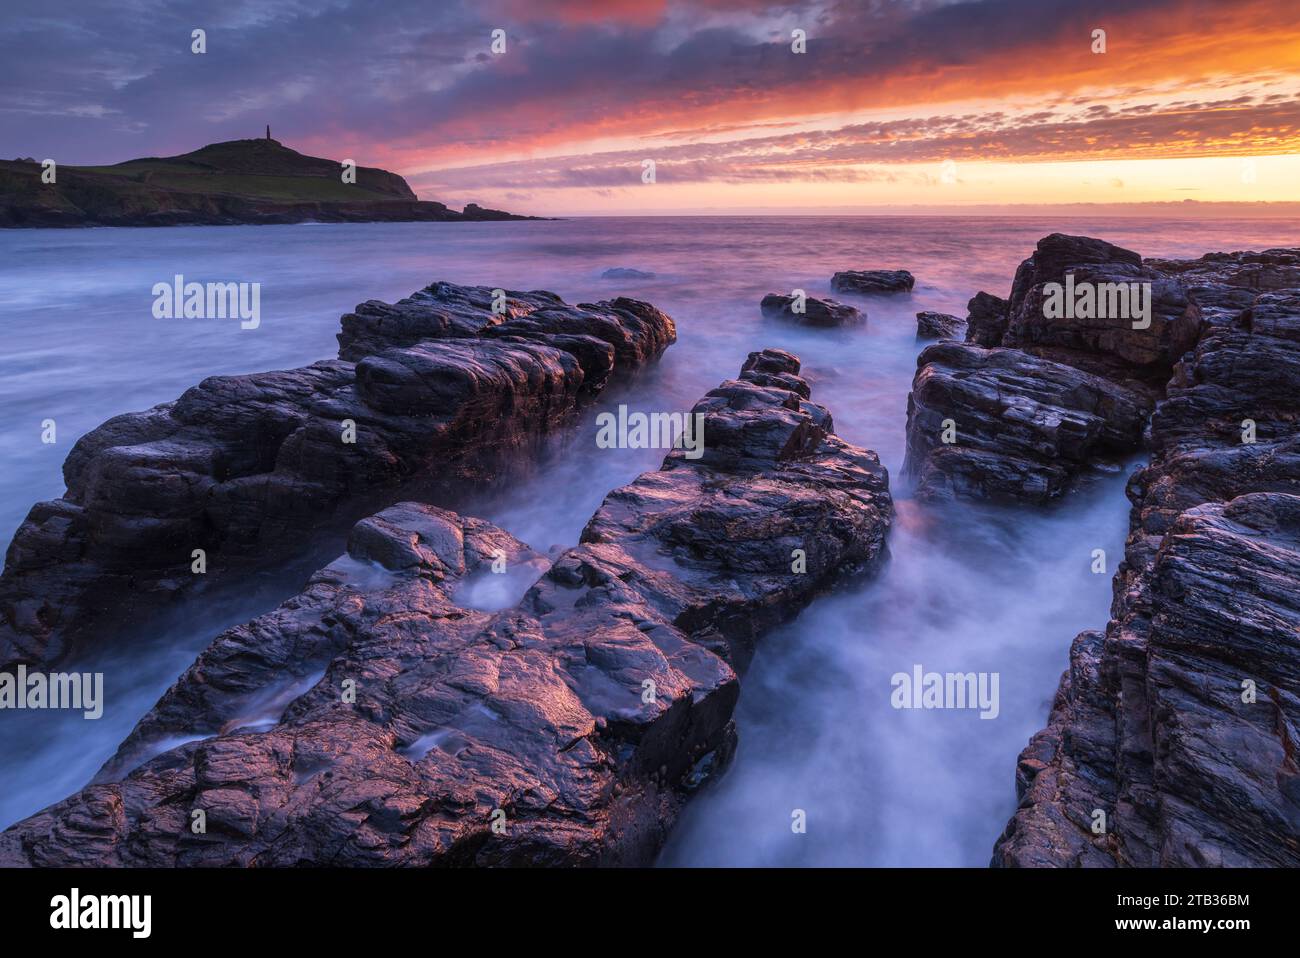 Coucher de soleil sur le cap Cornwall depuis les rives rocheuses de Porth Ledden, Cornouailles, Angleterre. Printemps (mai) 2022. Banque D'Images